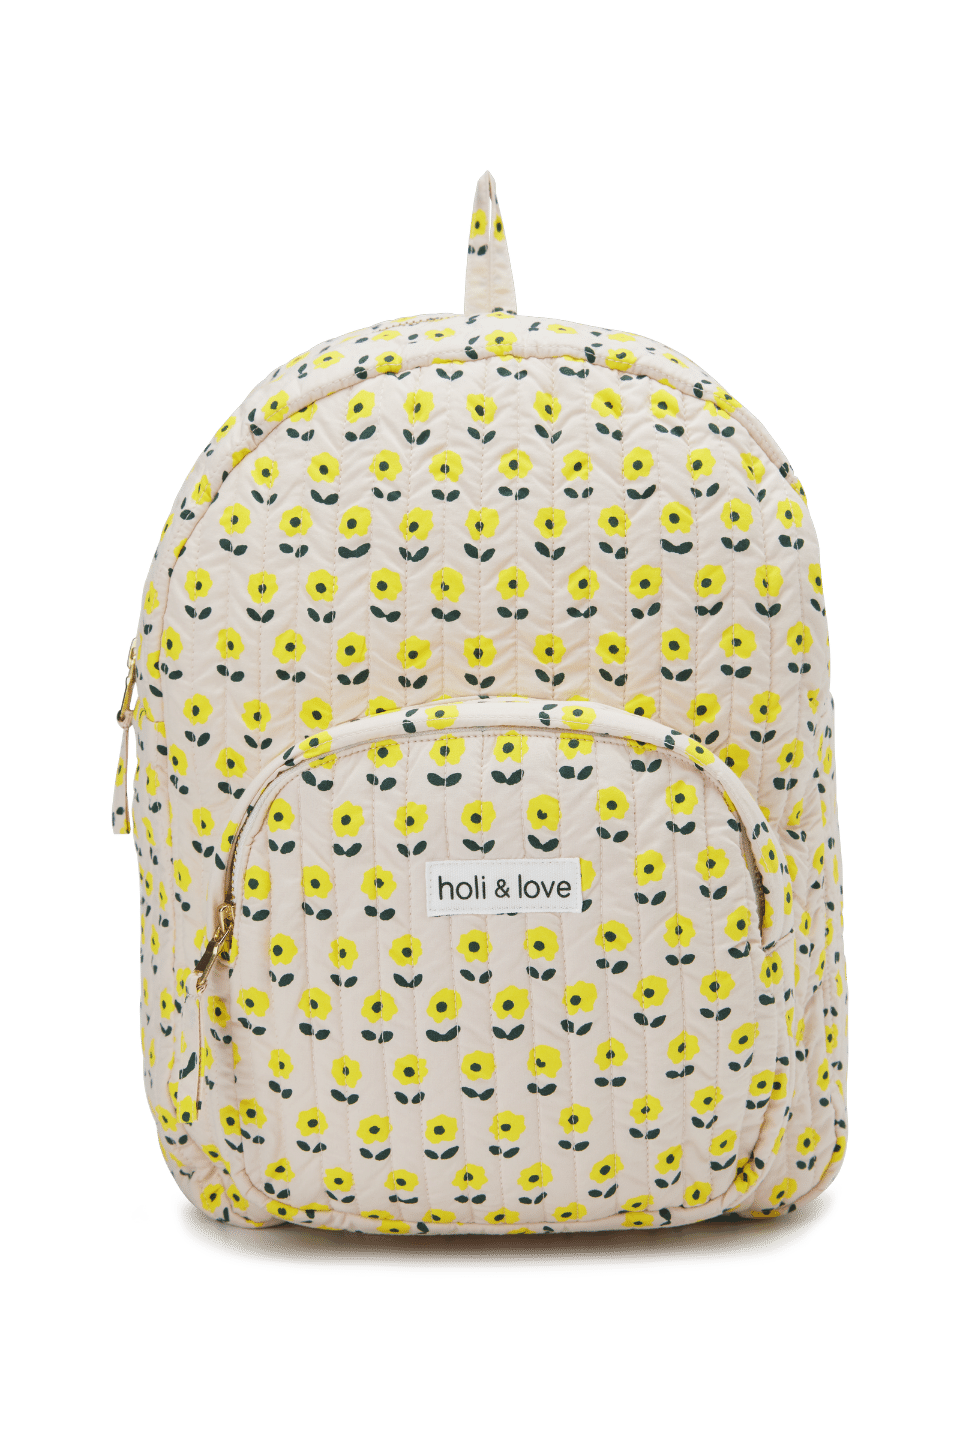 Sac à dos pour enfant avec une poche exterieure, fermeture zip, couleur beige motif à fleurs jaunes, coton biologique, accessoire de mode ethique en coton bio mixte unisexe